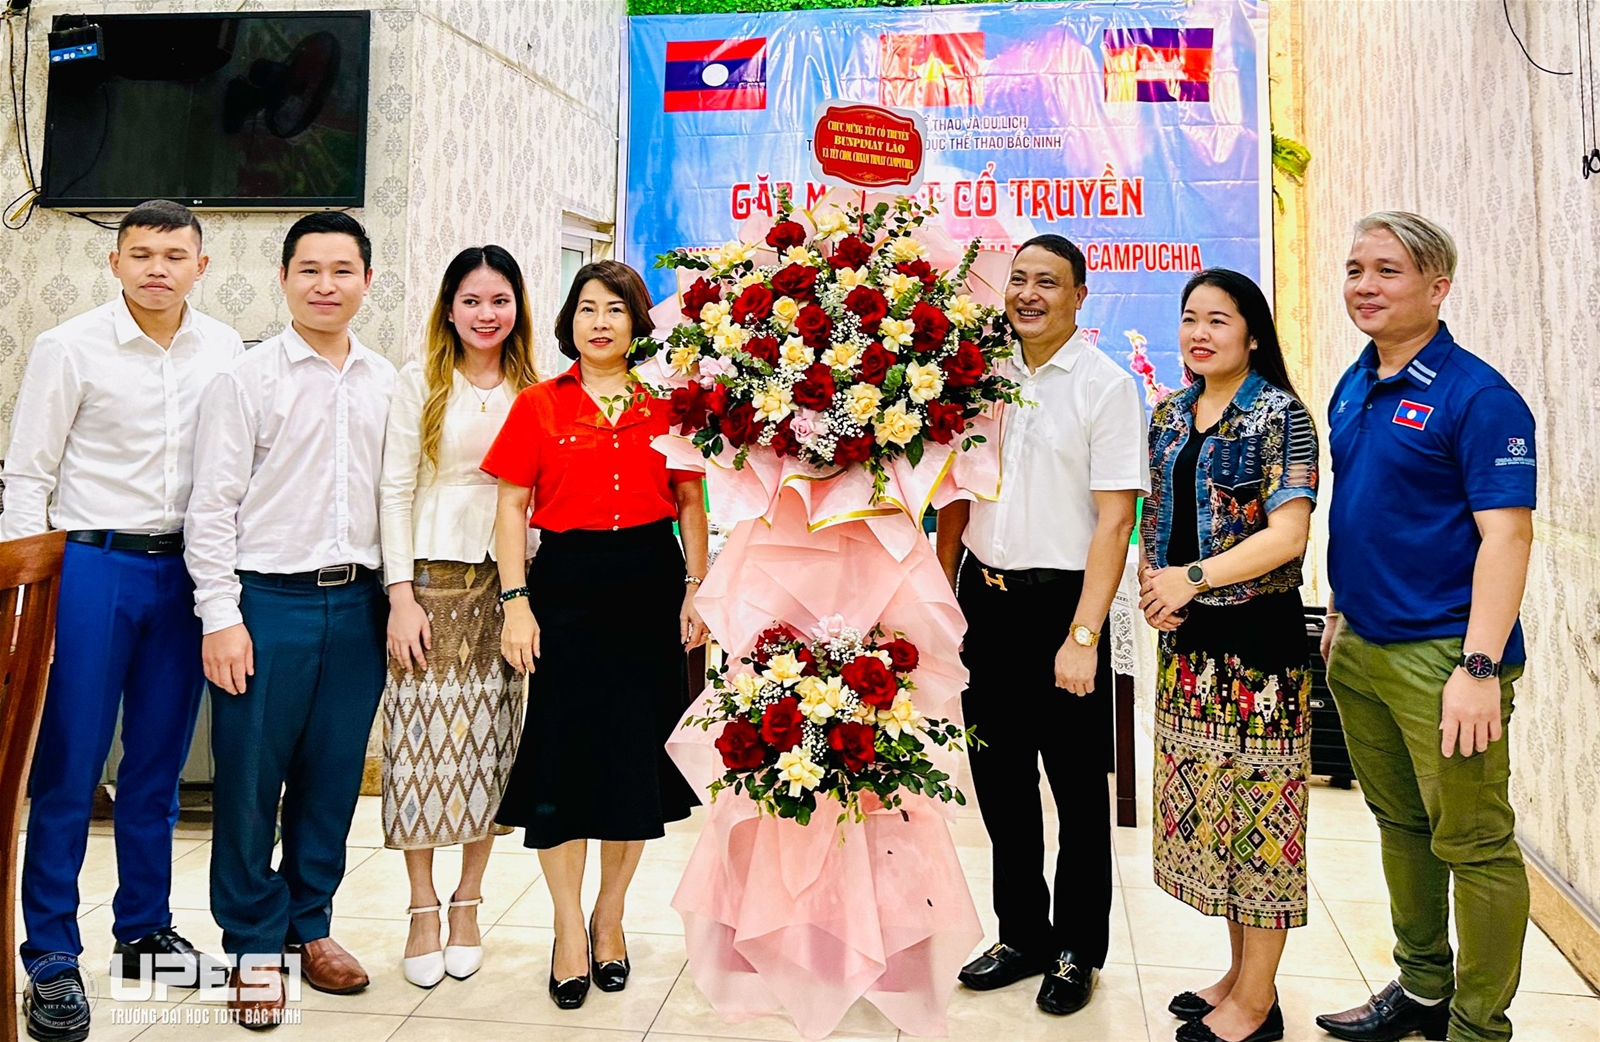 Trường Đại học TDTT Bắc Ninh tổ chức Tết Cổ truyền cho lưu học sinh, CHDCND Lào, Vương quốc Campuchia